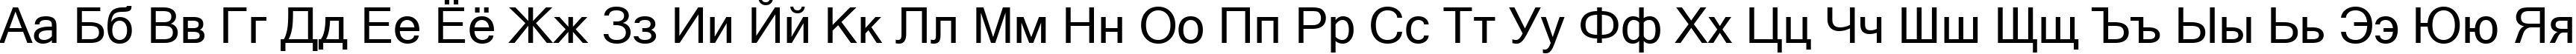 Пример написания русского алфавита шрифтом Microsoft Sans Serif